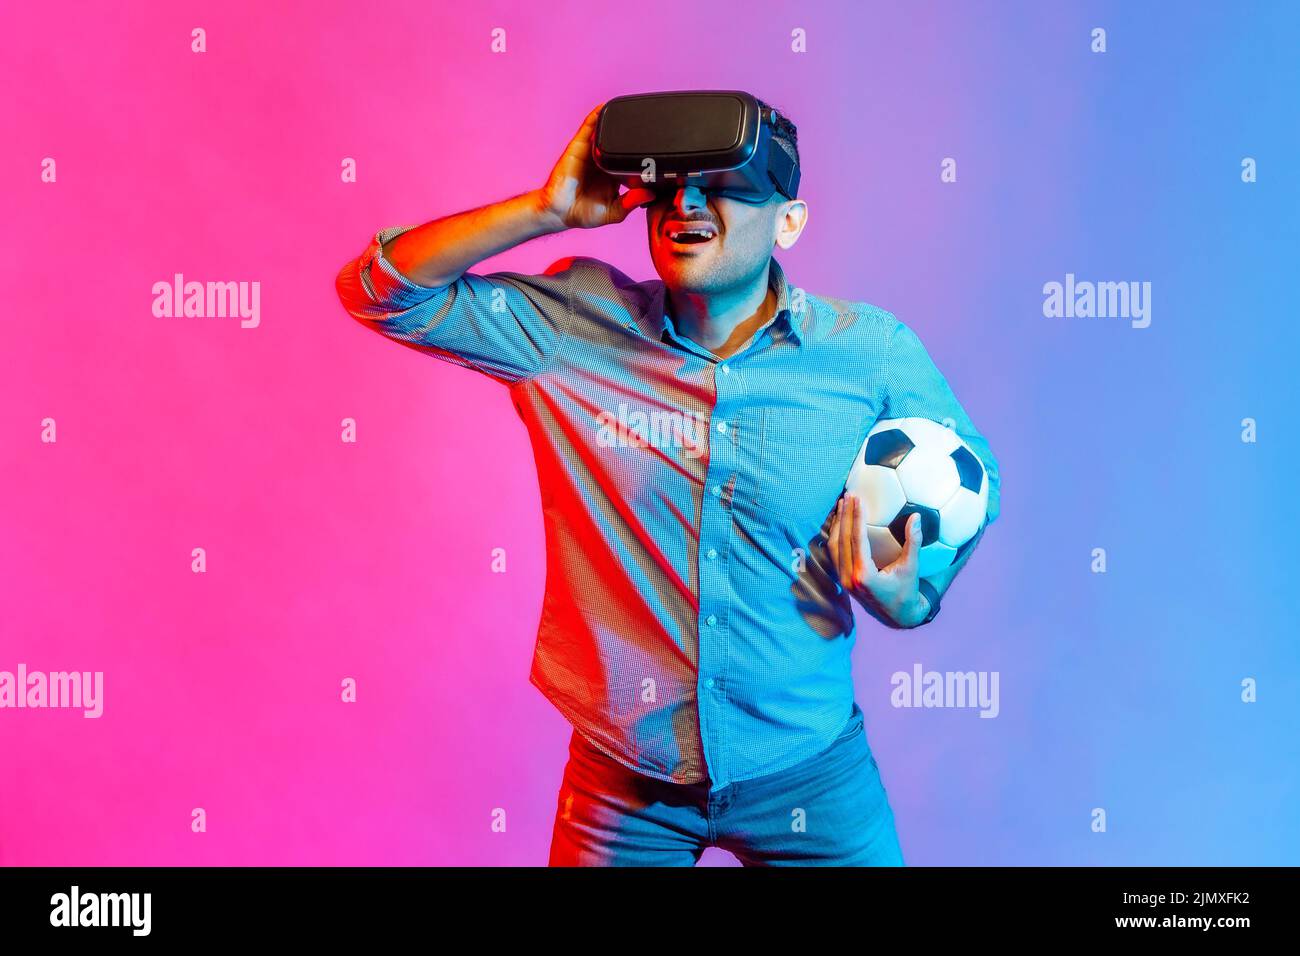 Porträt eines aufgeregten, konzentrierten Mannes im Hemd, der Headset trägt und den Fußballball hält und 3D Fußballmannschaften beobachtet. Innenaufnahmen im Studio, isoliert auf farbigem Neonlicht-Hintergrund. Stockfoto